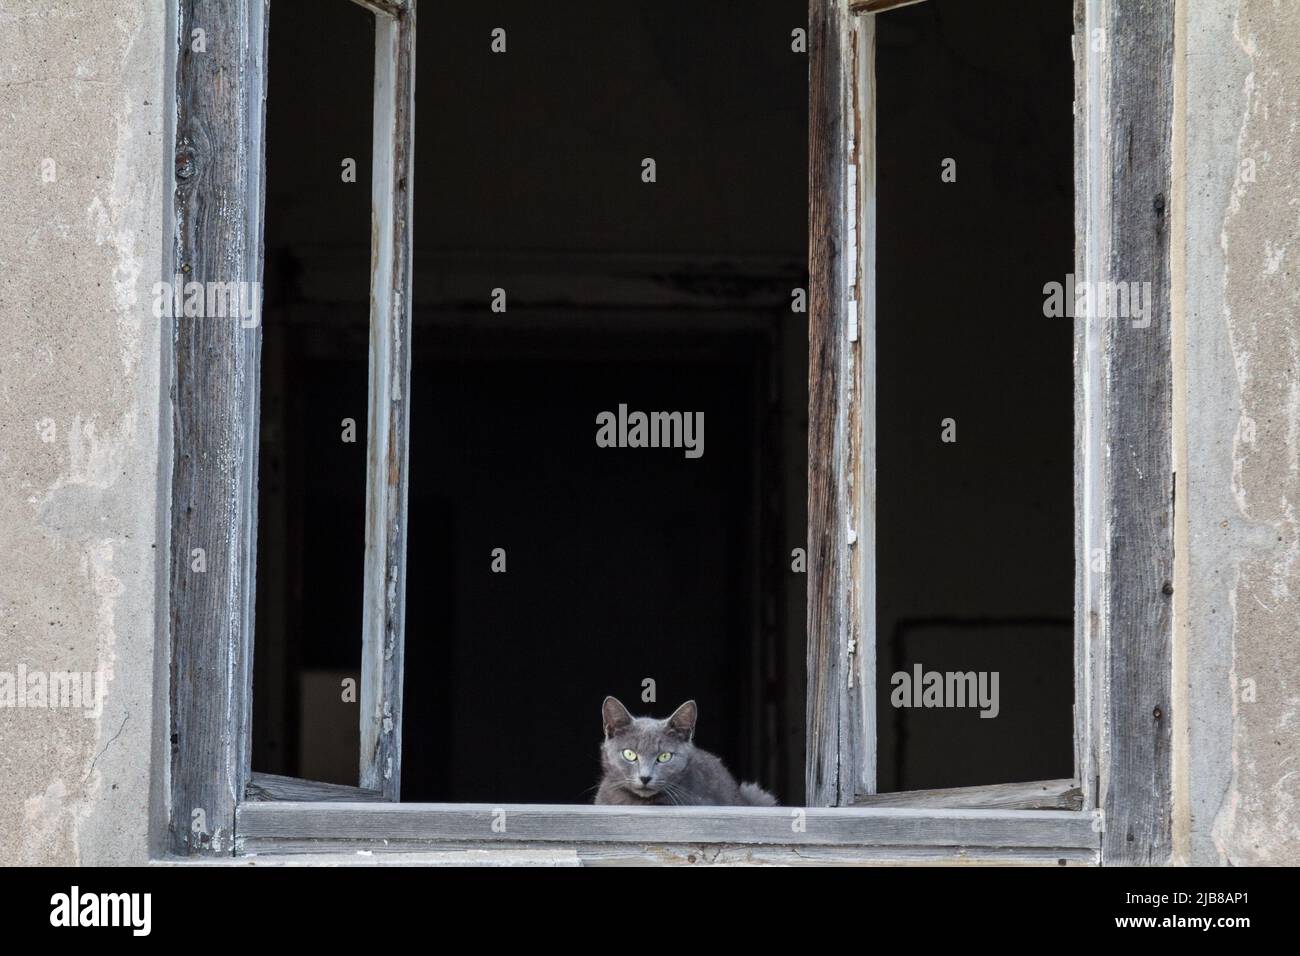 Foto de un gato callejero azul tomada en una calle serbia, curioso, observando al fotógrafo desde una casa abandonada. Foto de stock